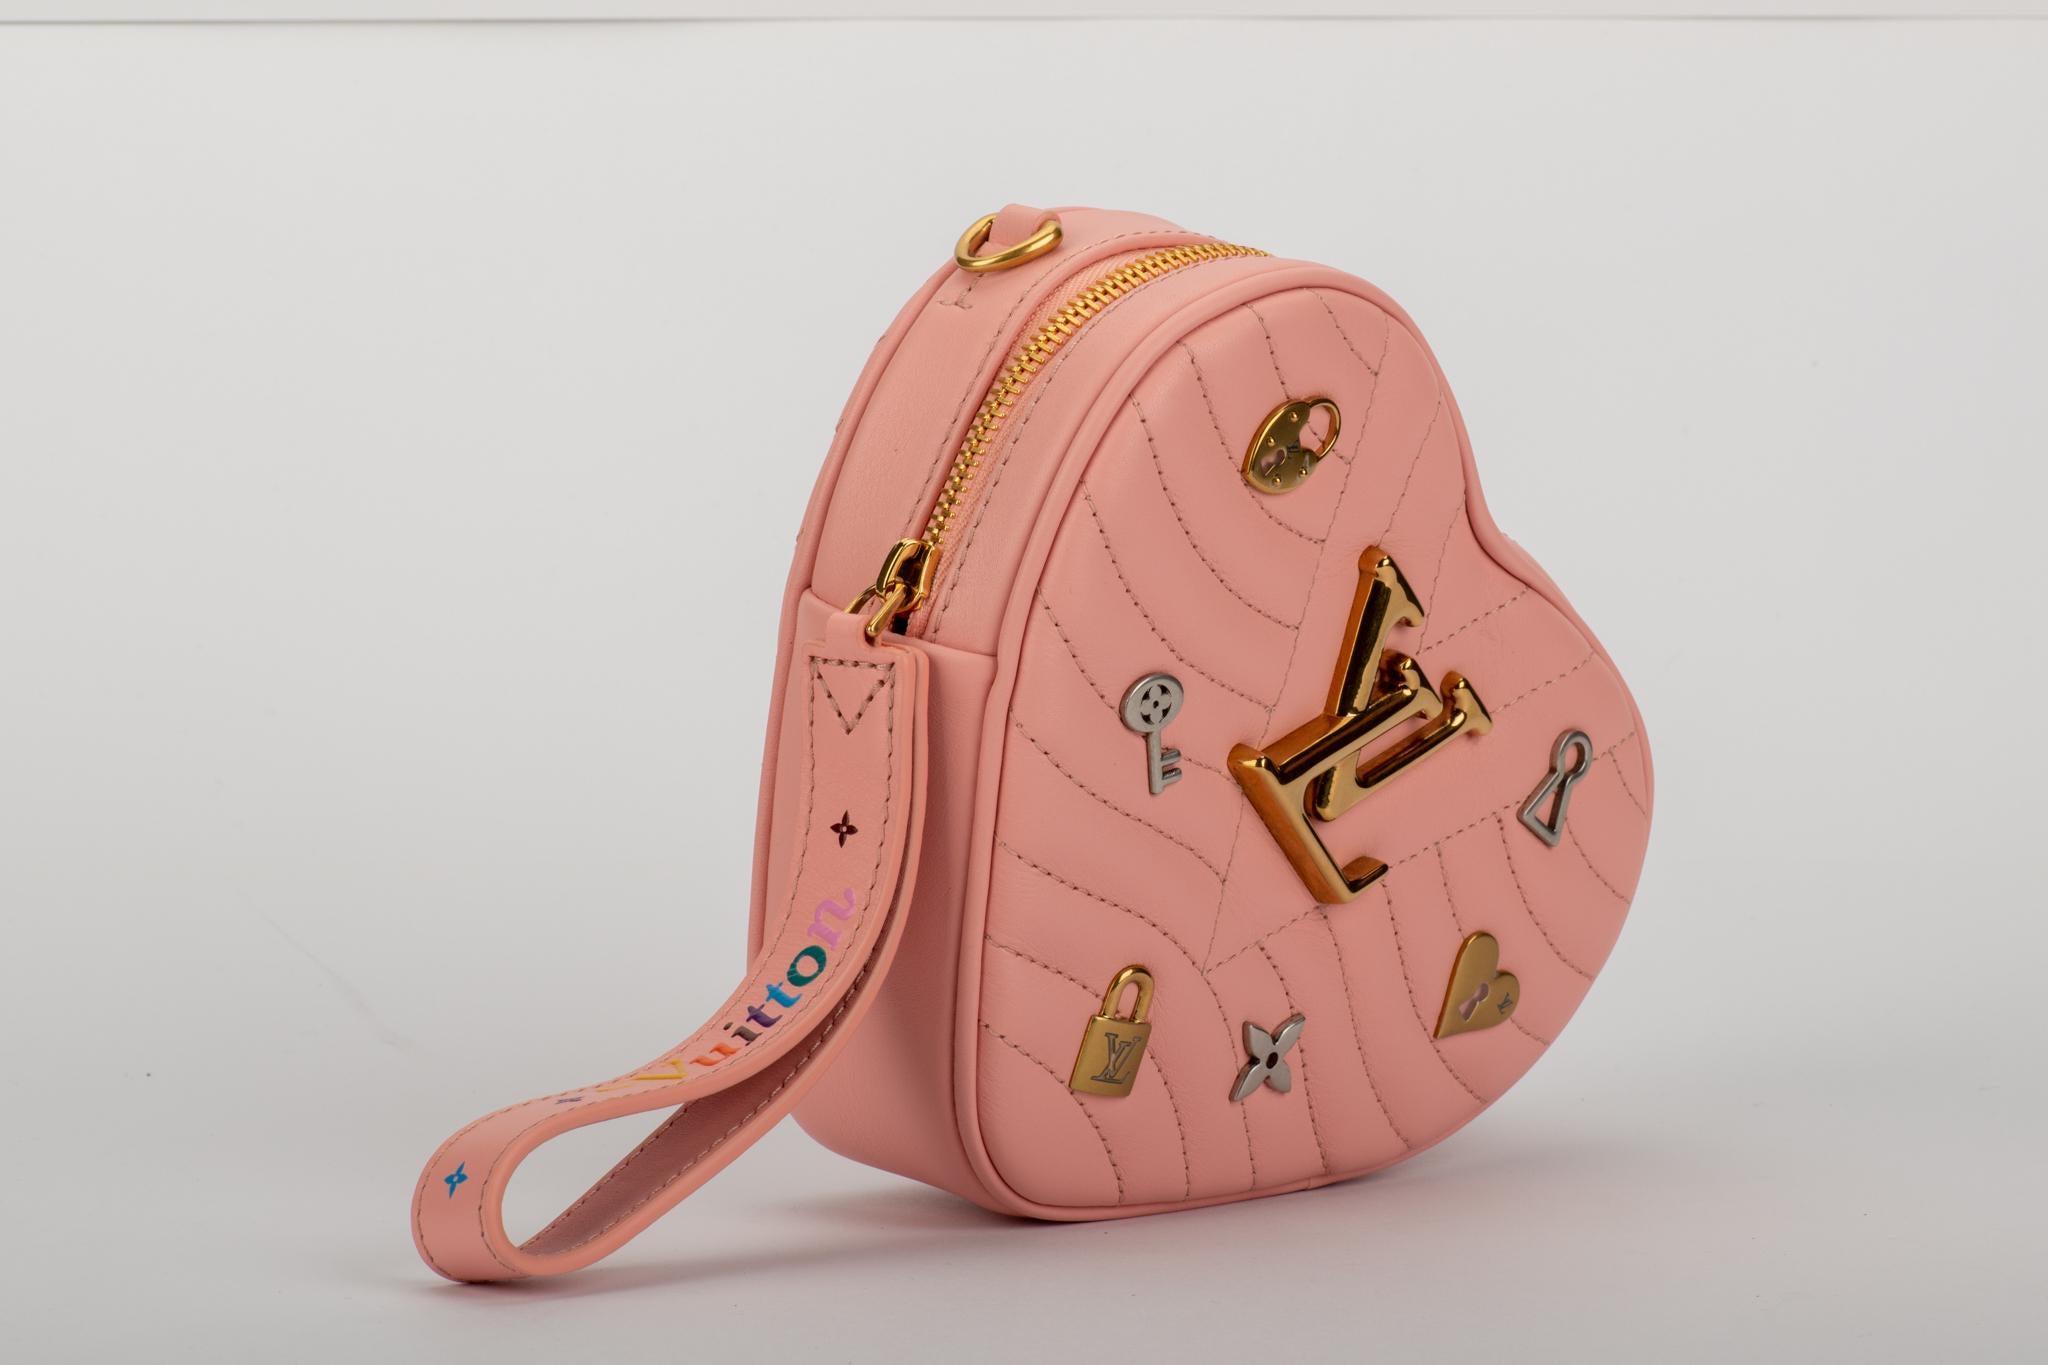 Louis Vuitton limitierte Auflage Herzform rosa Ledertasche mit Logo Silber und Gold charms. Can wir als Clutch, Hüfttasche oder Cross Body Bag geboren. Schultergurt 20